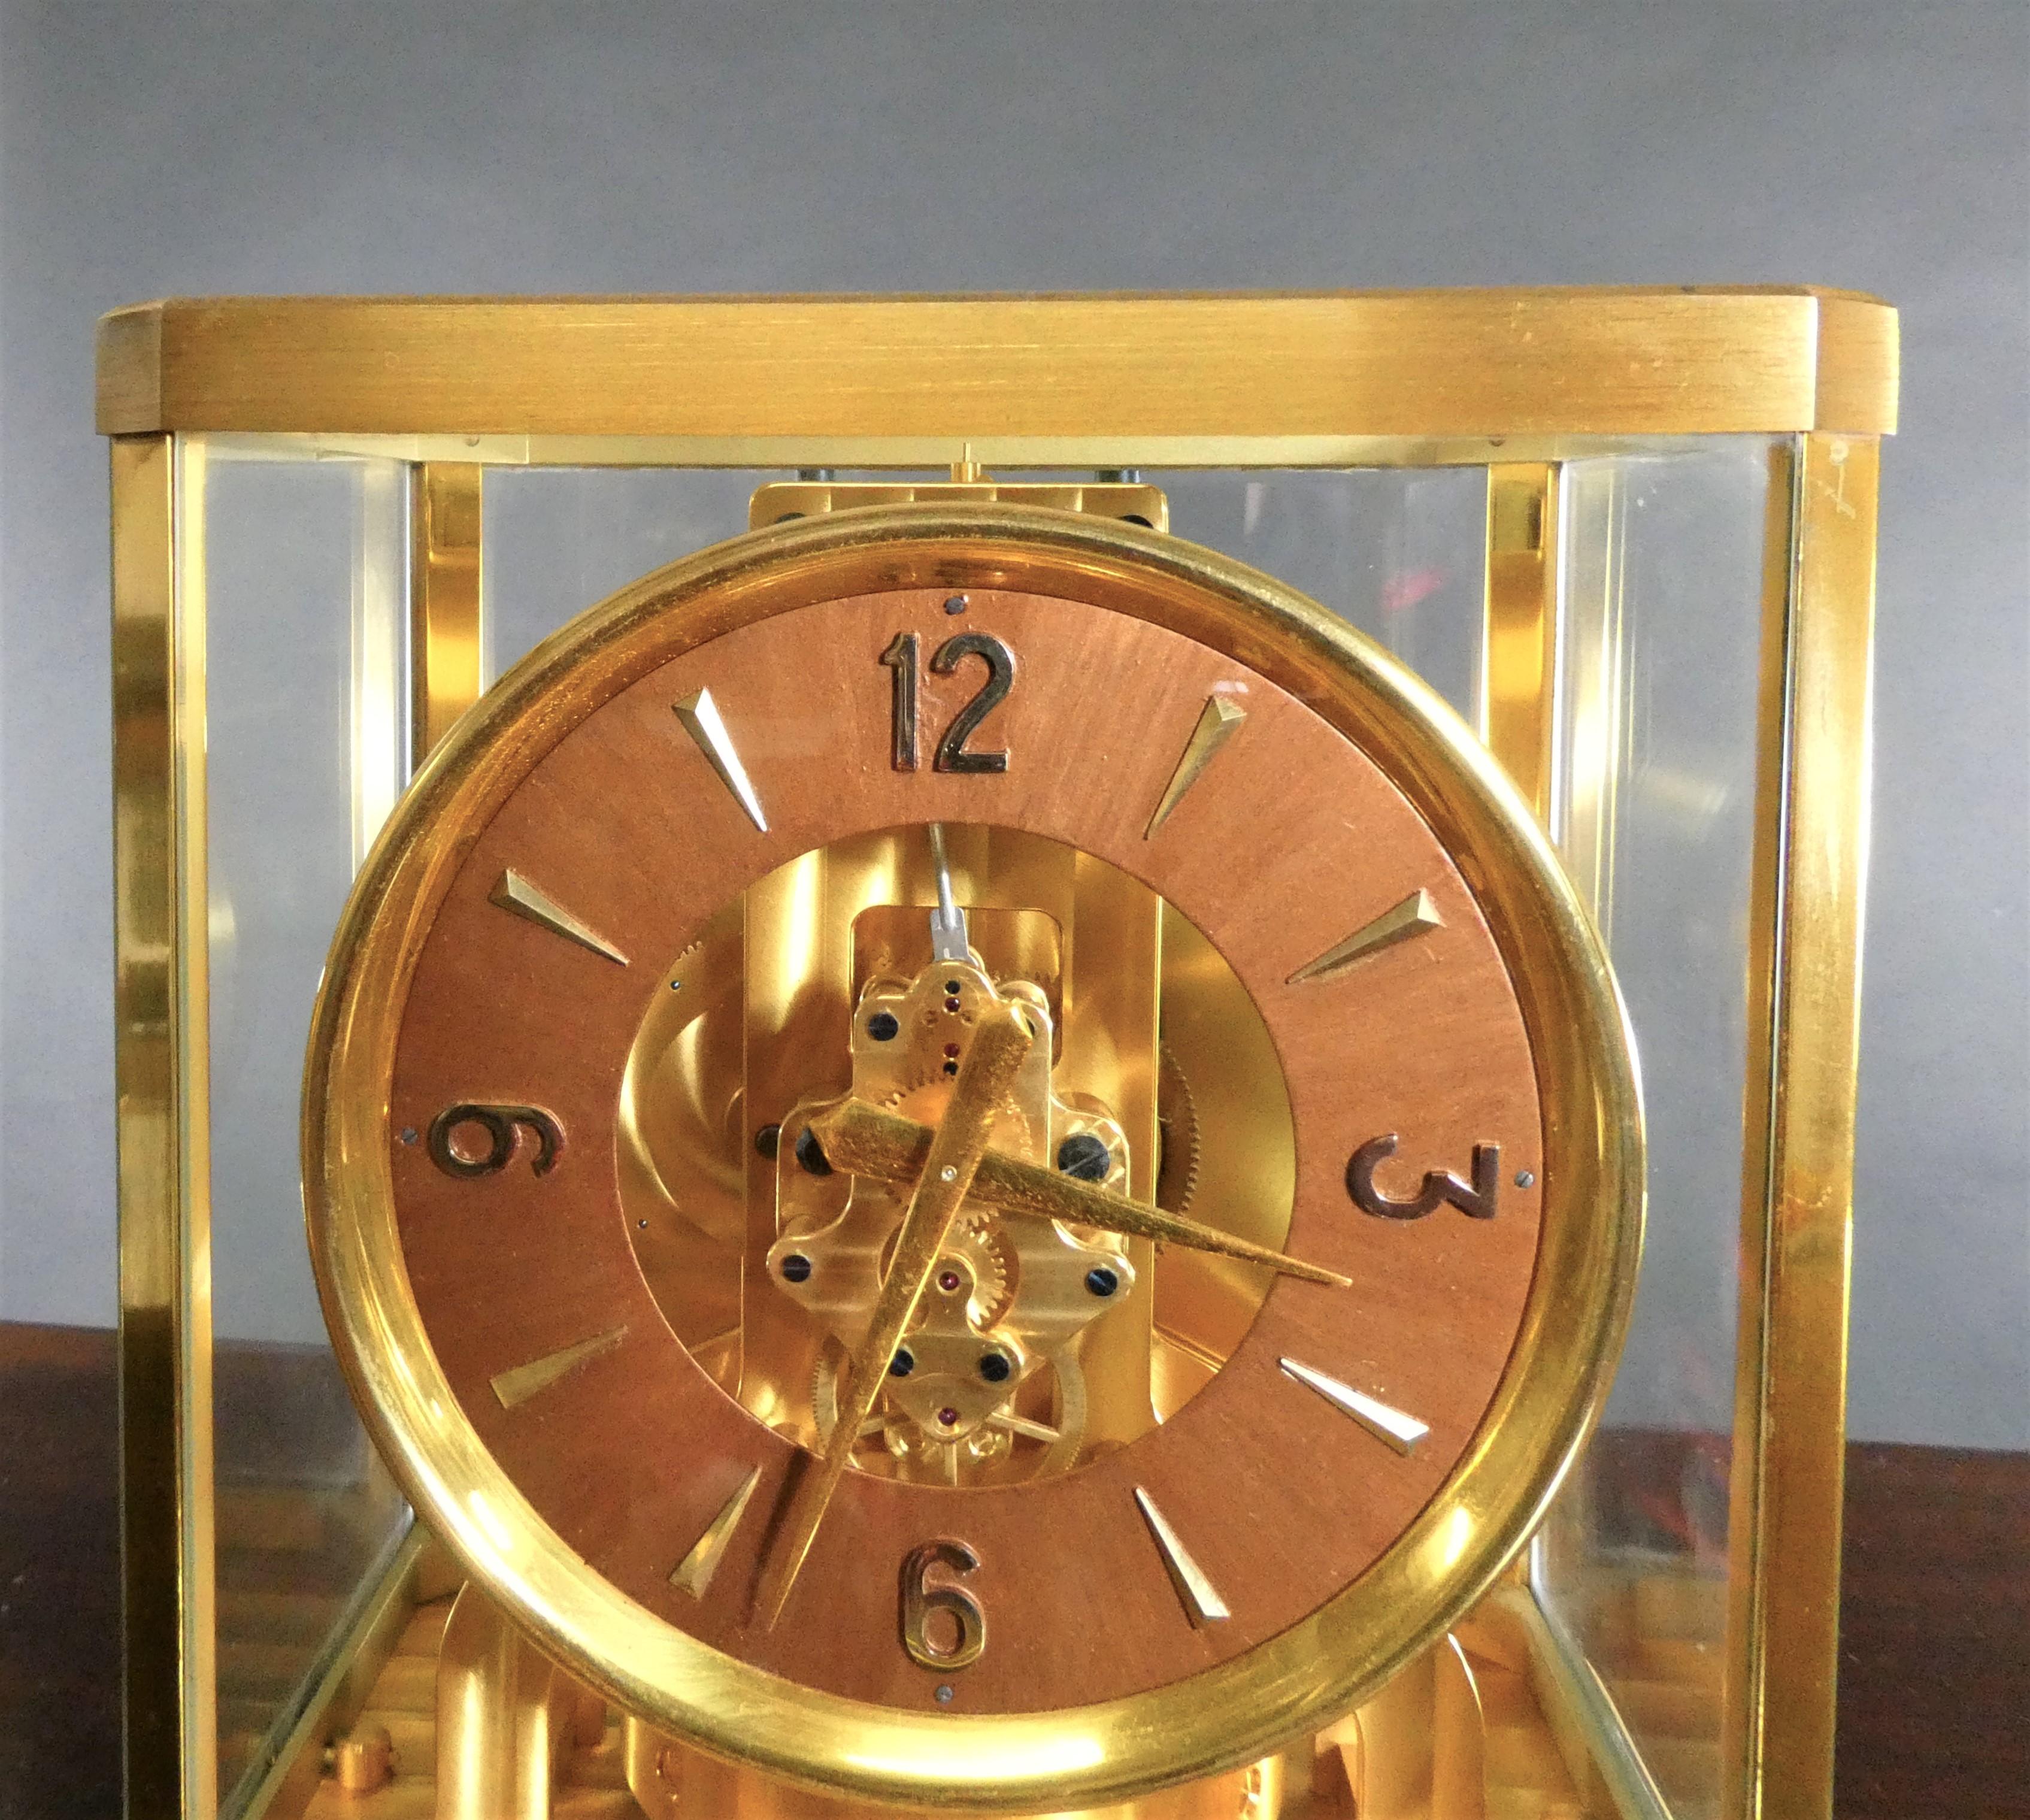 Jaeger-LeCoultre


Vergoldete Atmos-Uhr mit rotem, rundem Zifferblatt und arabischen Stabziffern.

Uhrwerk mit Rubinsteinen, signiert 'Jaeger-Le-Coultre', mit oszillierendem Pendel.

Hervorragende Technik mit präziser